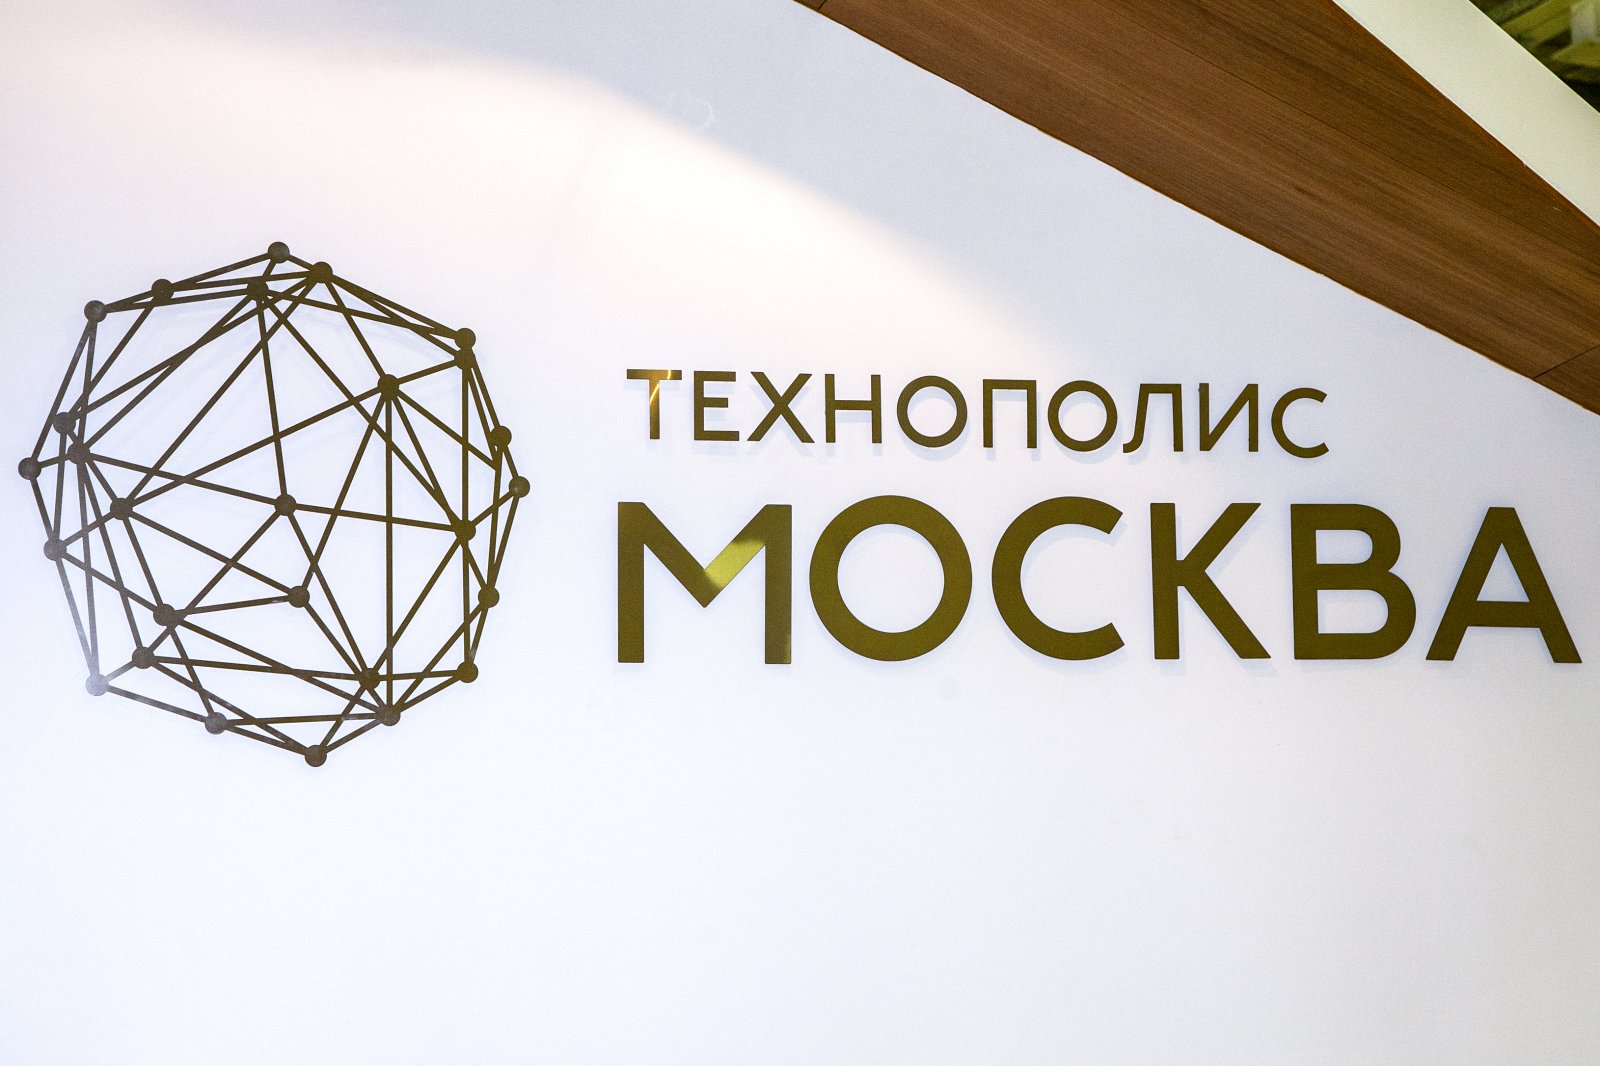 Резиденты ОЭЗ «Технополис “Москва”» создали 1,3 тысячи новых рабочих мест - фото 1